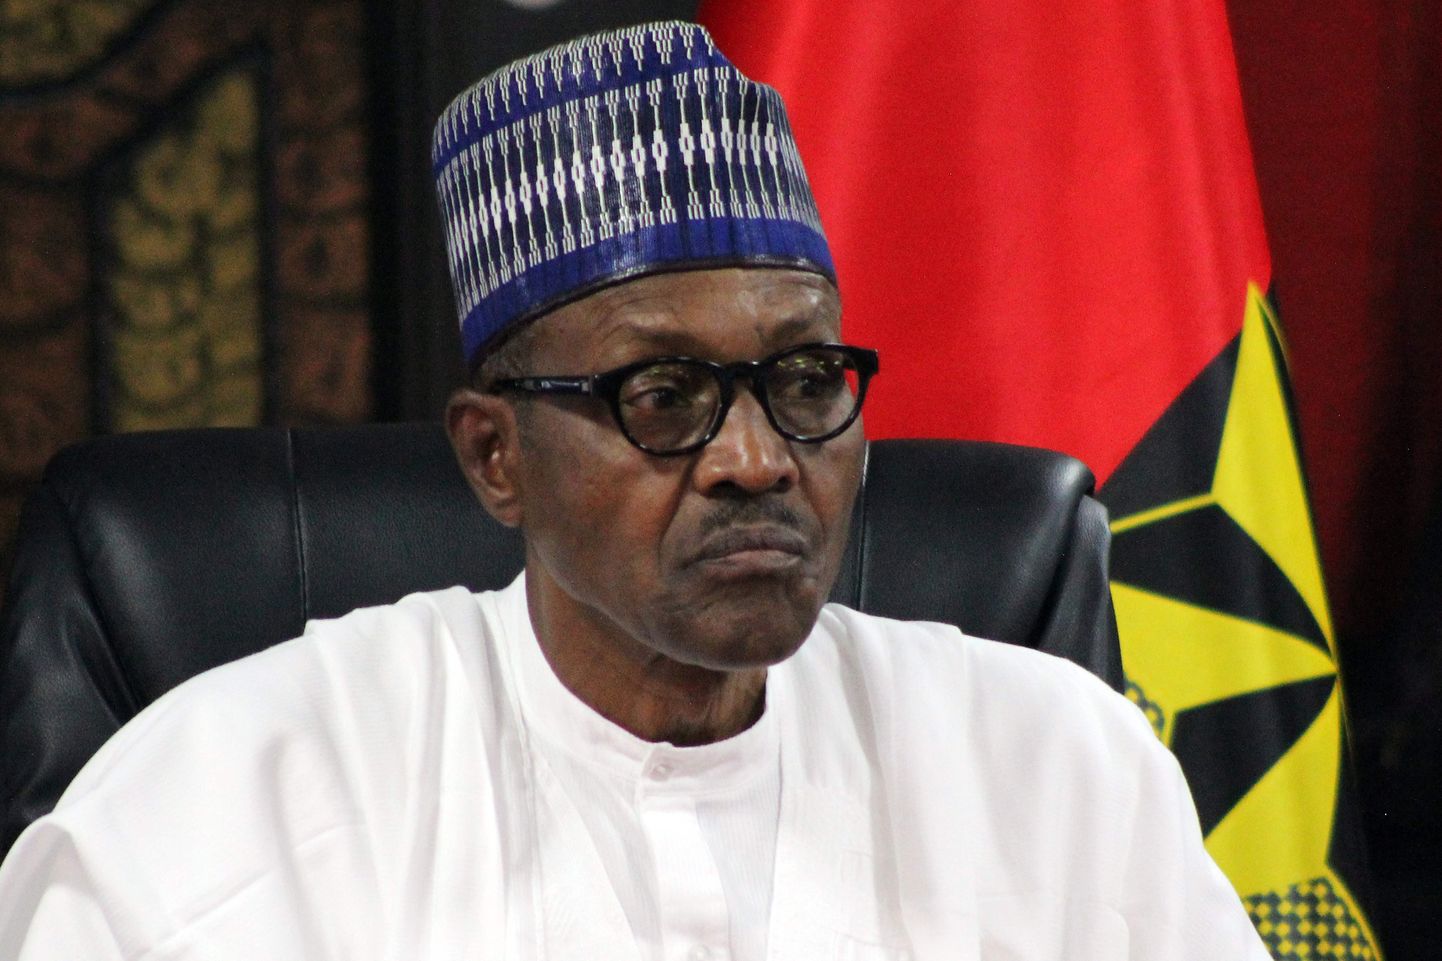 Muhammadu või Jubril? Kriitikud arvavad, et Nigeeria president on surnud ja teda asendab teisik Jubril.